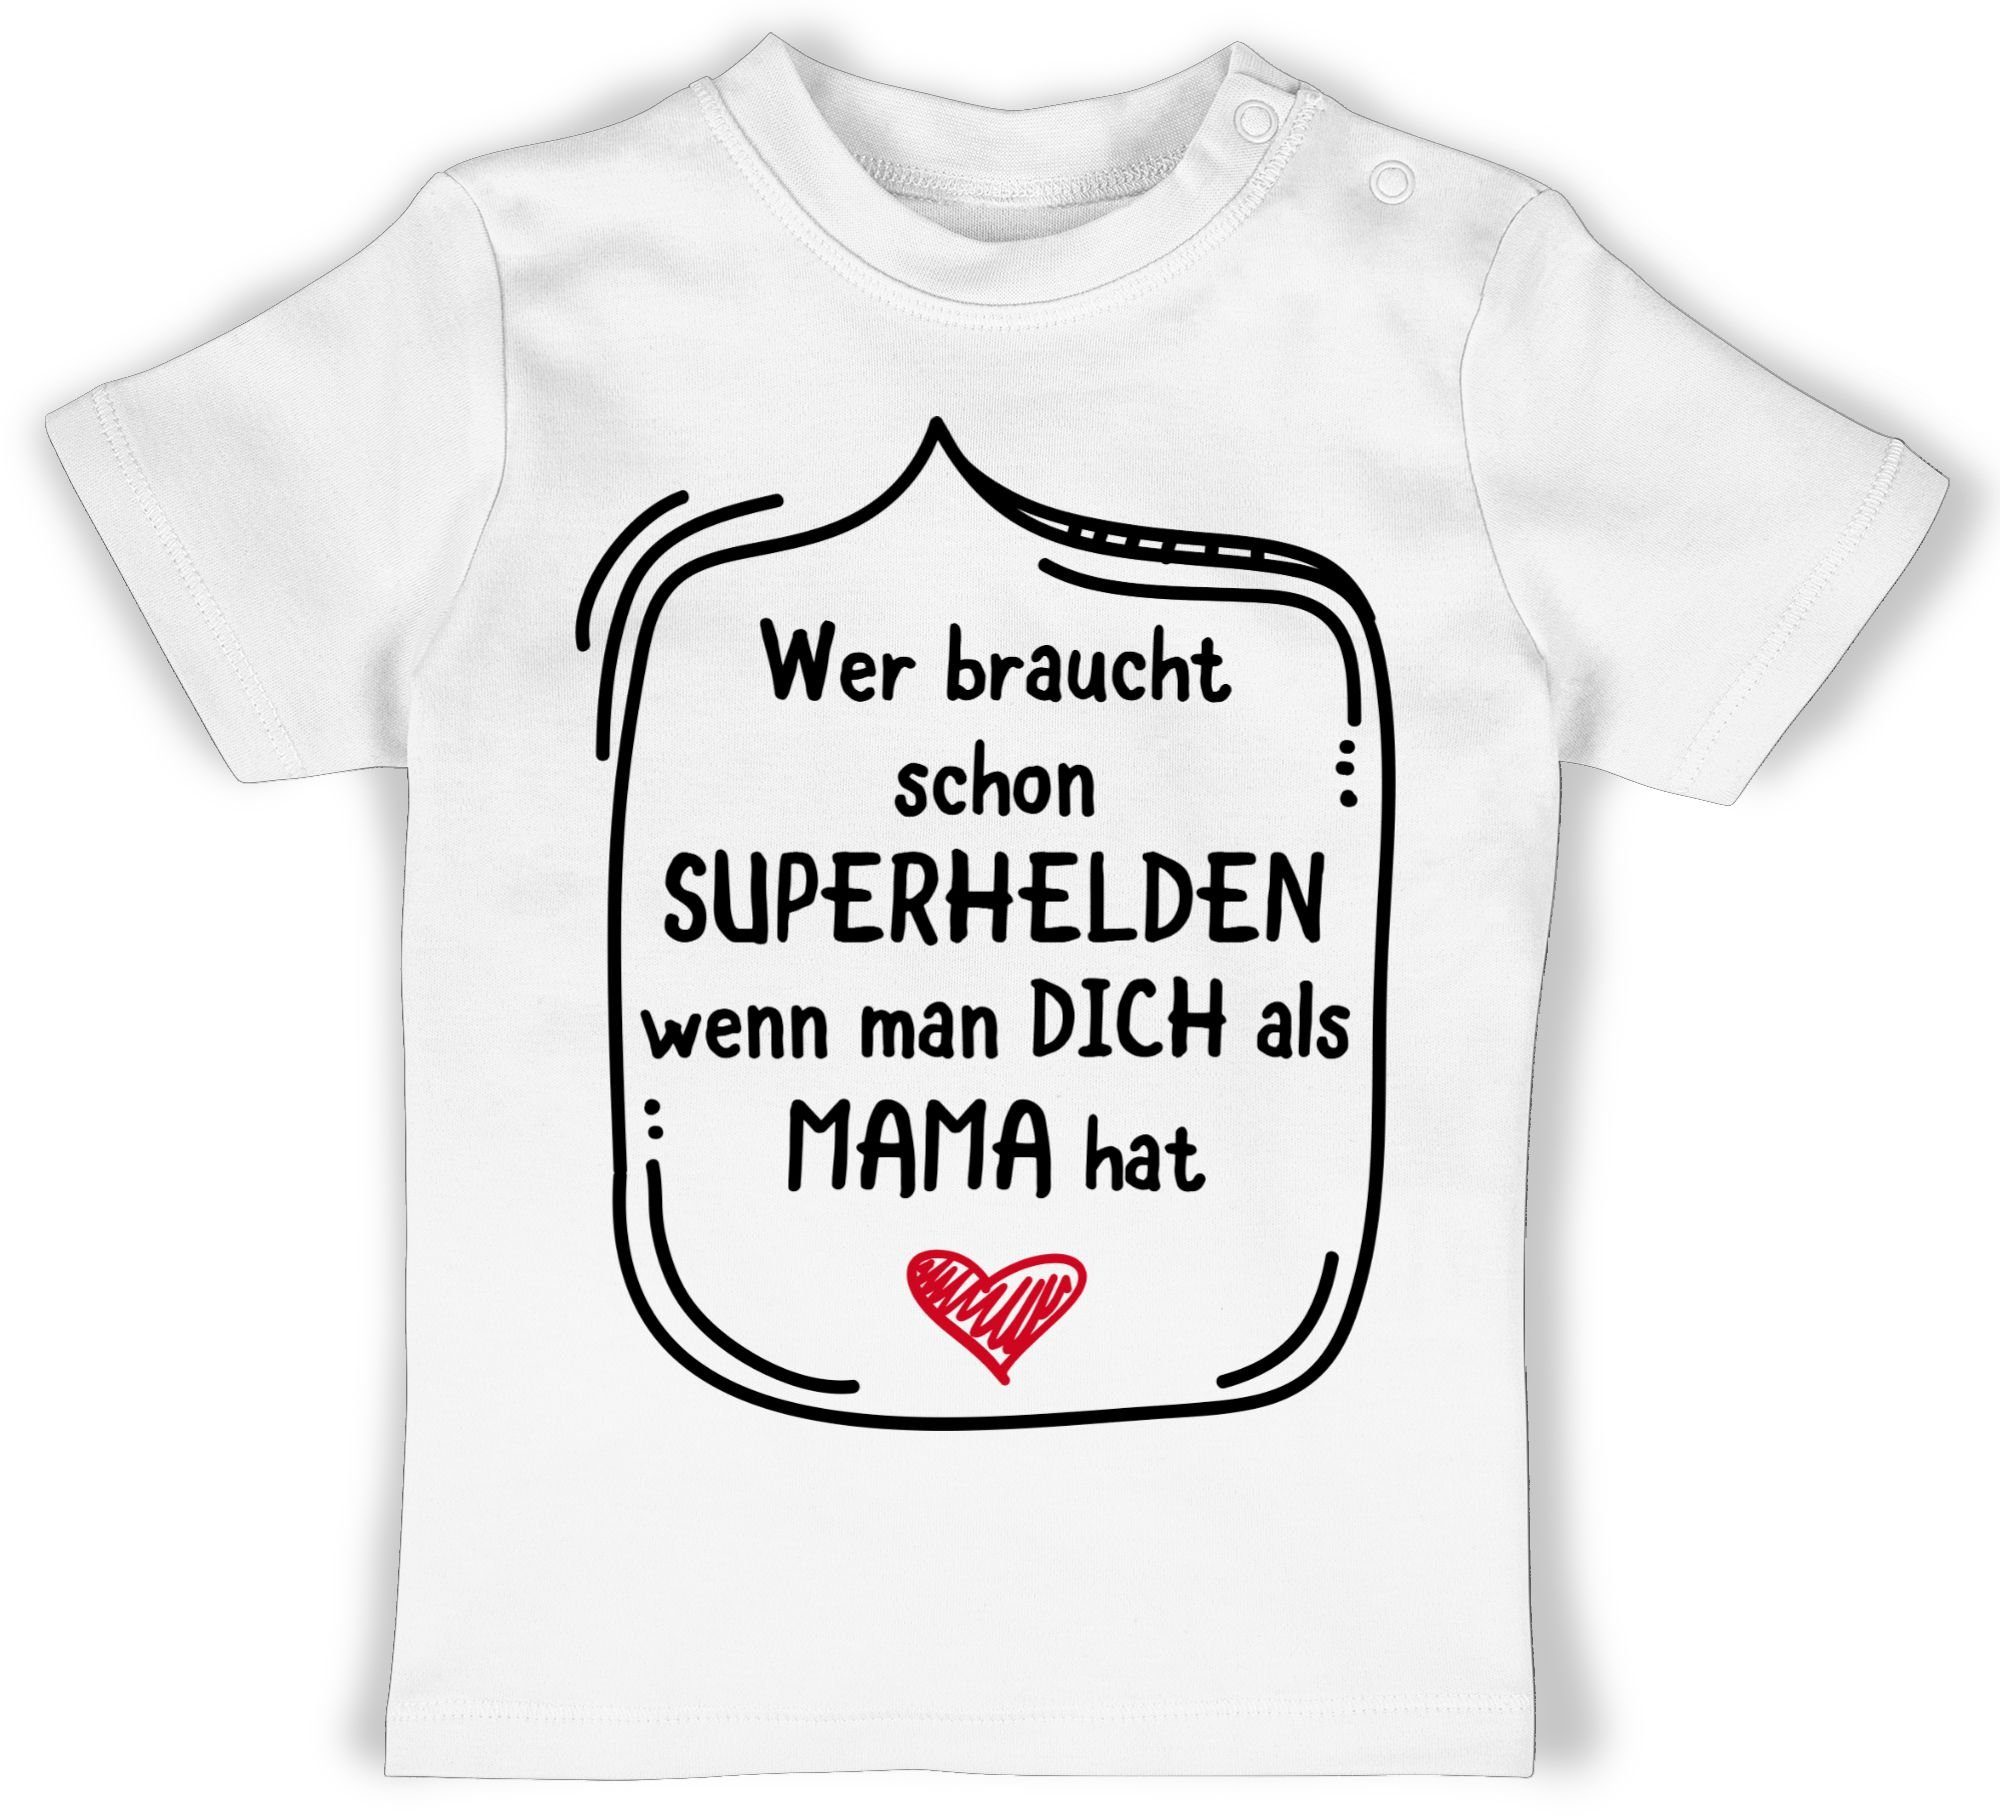 Shirtracer T-Shirt Wer braucht schon Muttertagsgeschenk als Mama dich 1 man Superhelden Weiß wenn hat